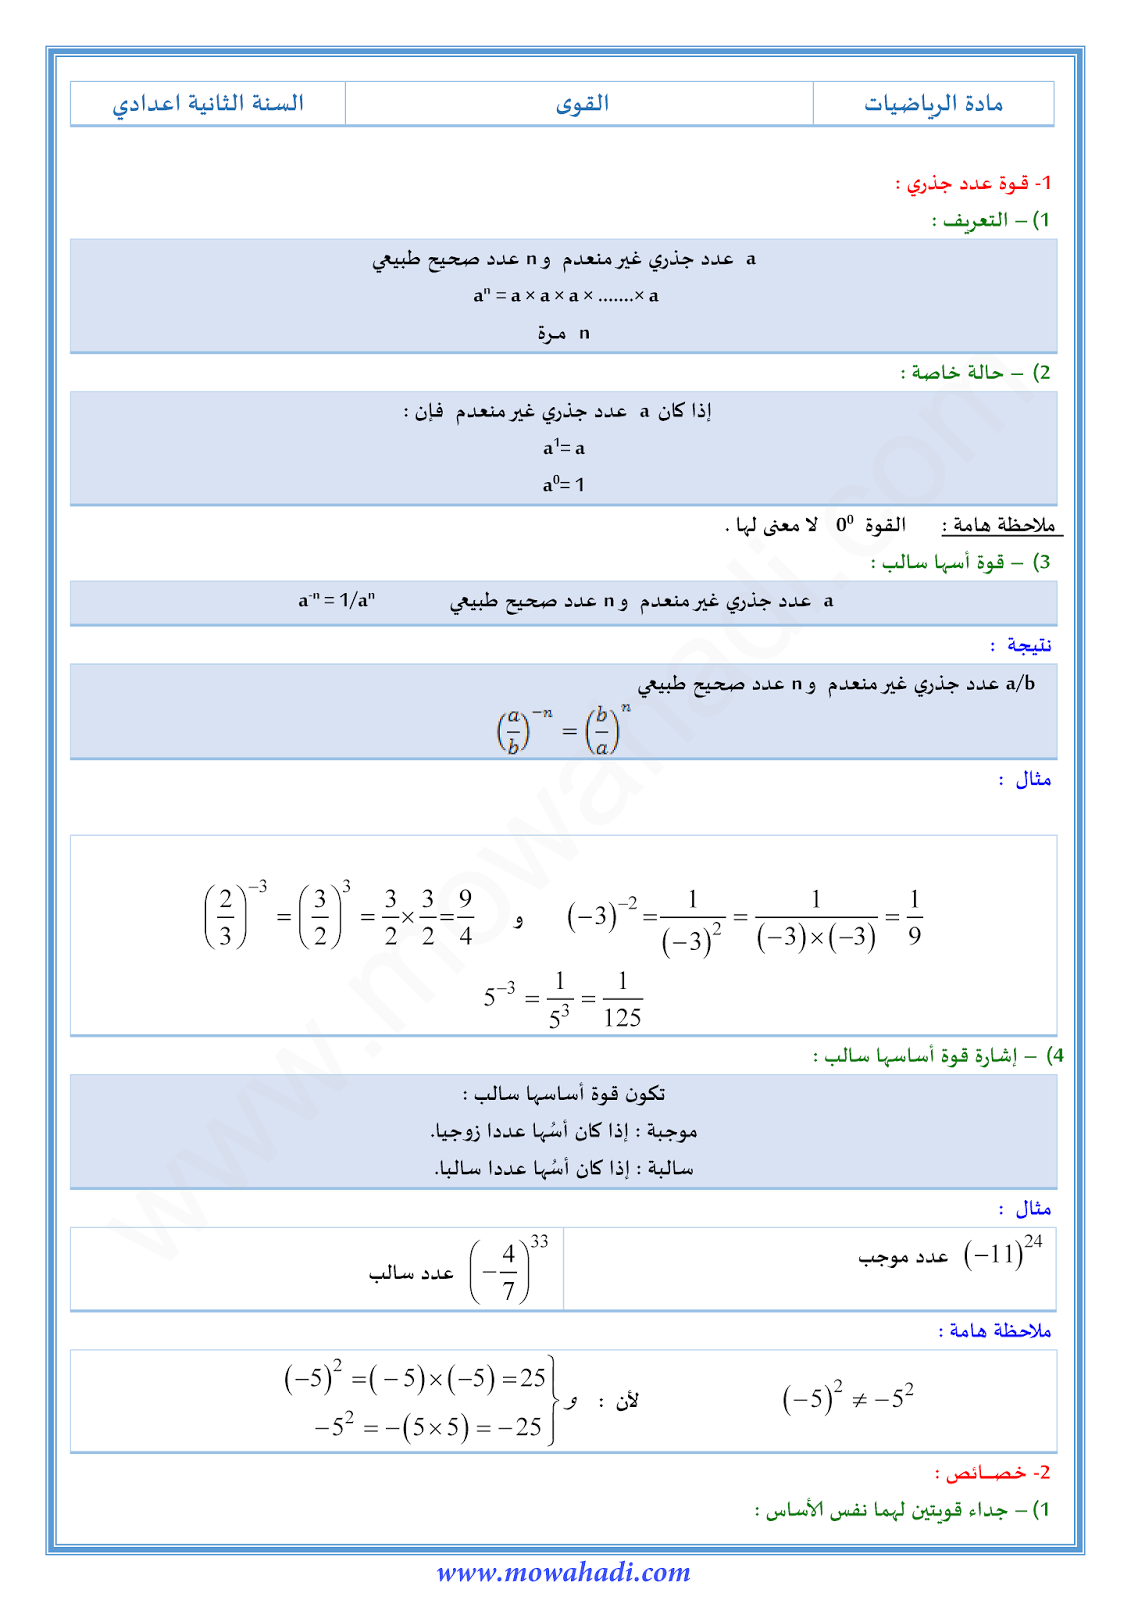 درس القوى للسنة الثانية اعدادي في مادة الرياضيات 7-cours-math2_001